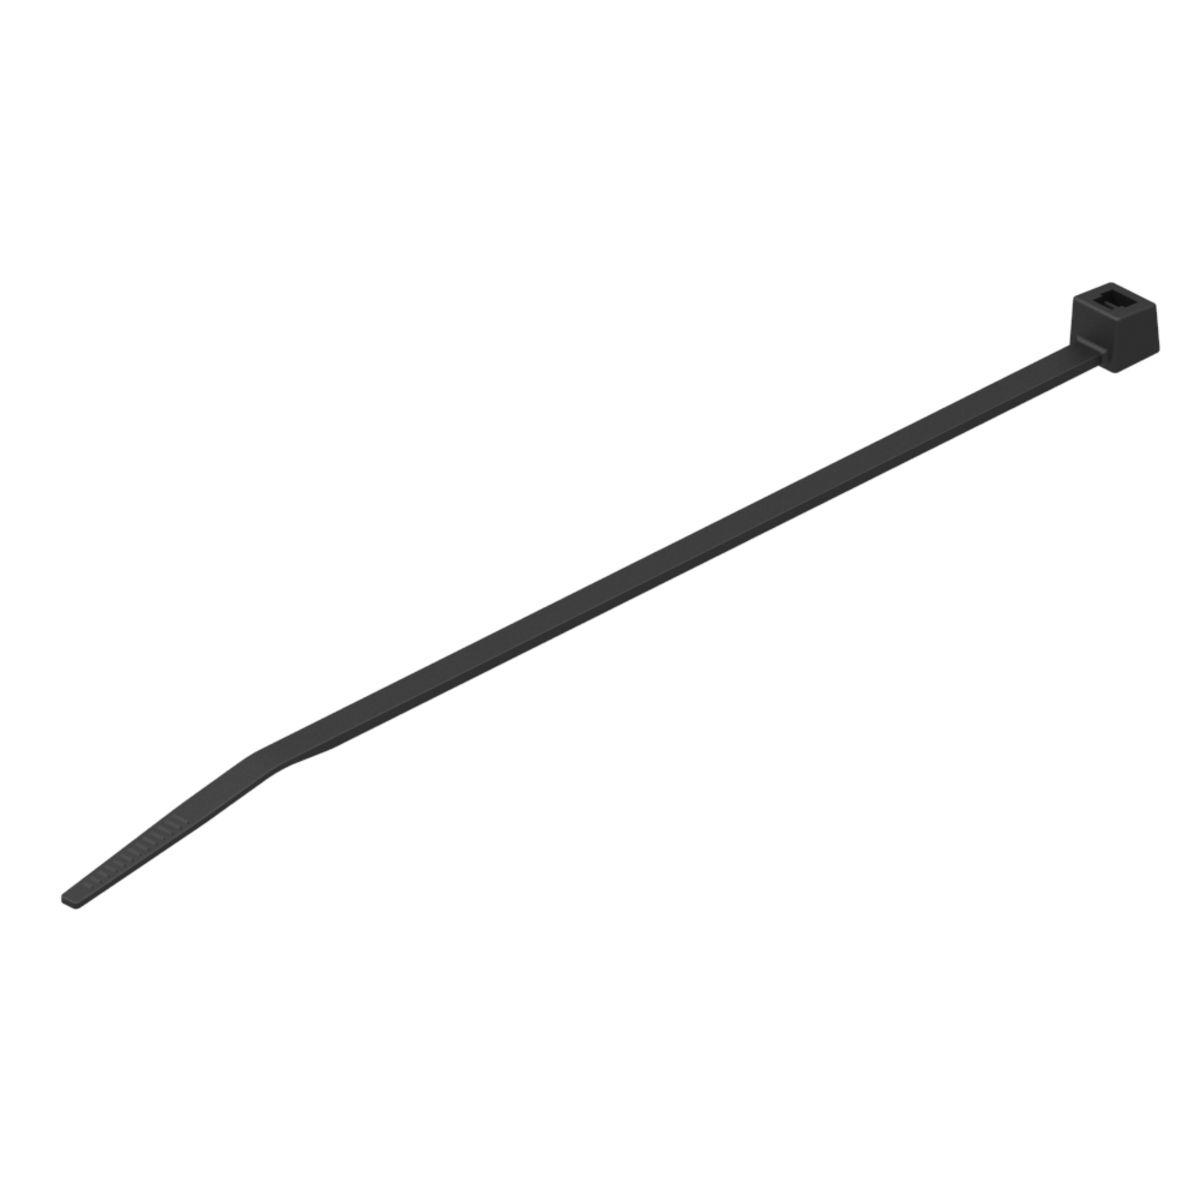 Hubbell CTNT50275D0 Nylon 12 Cable Tie, Tensile strength: 50 Lbs, Color: Black, 11.00"L, 0.19"W, 2.75" Bundle Dia. 